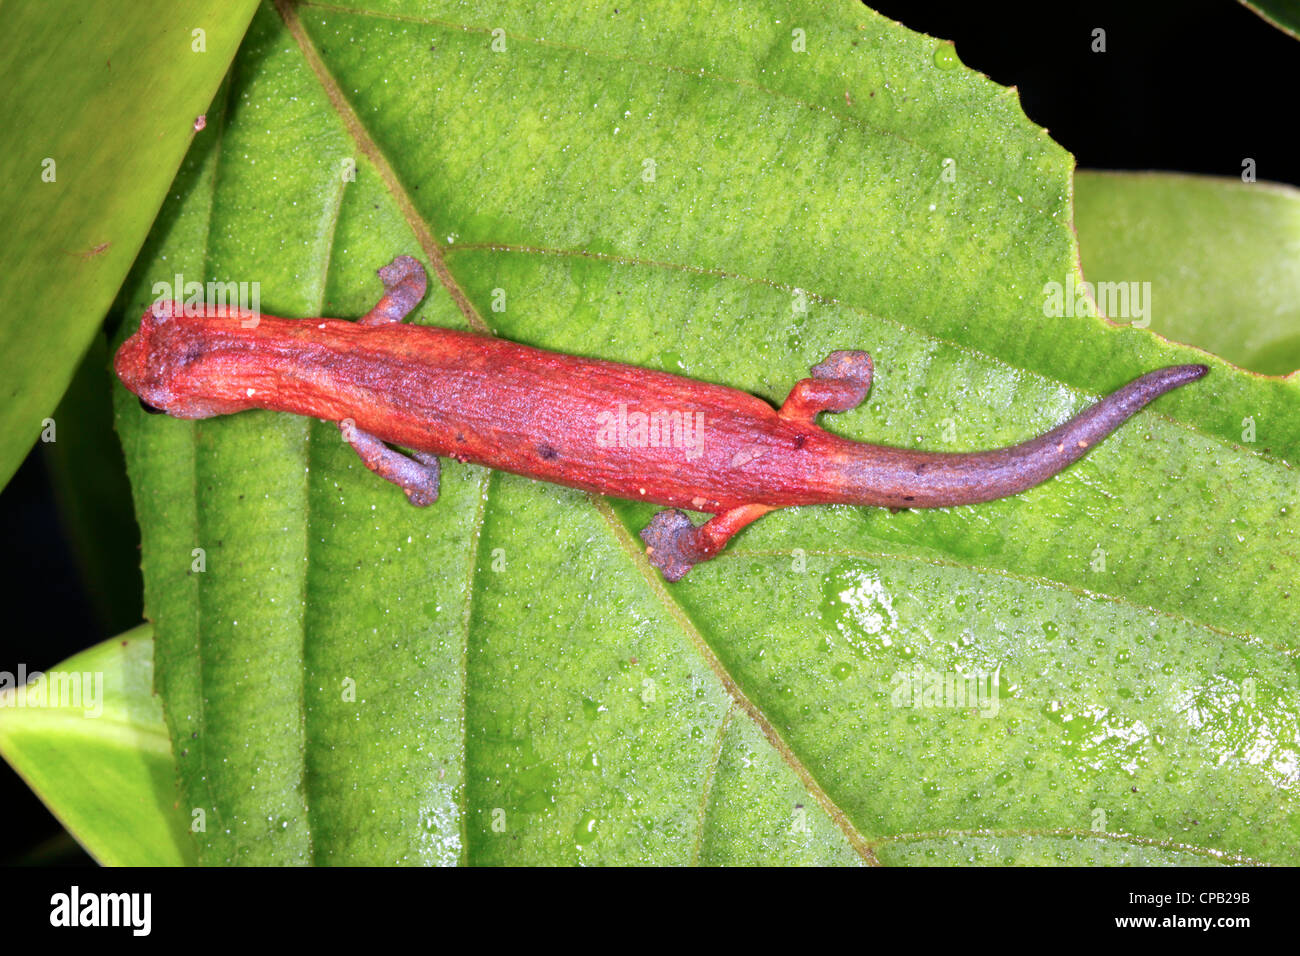 Amazon Climbing Salamander (Bolitoglossa peruviana) Stock Photo